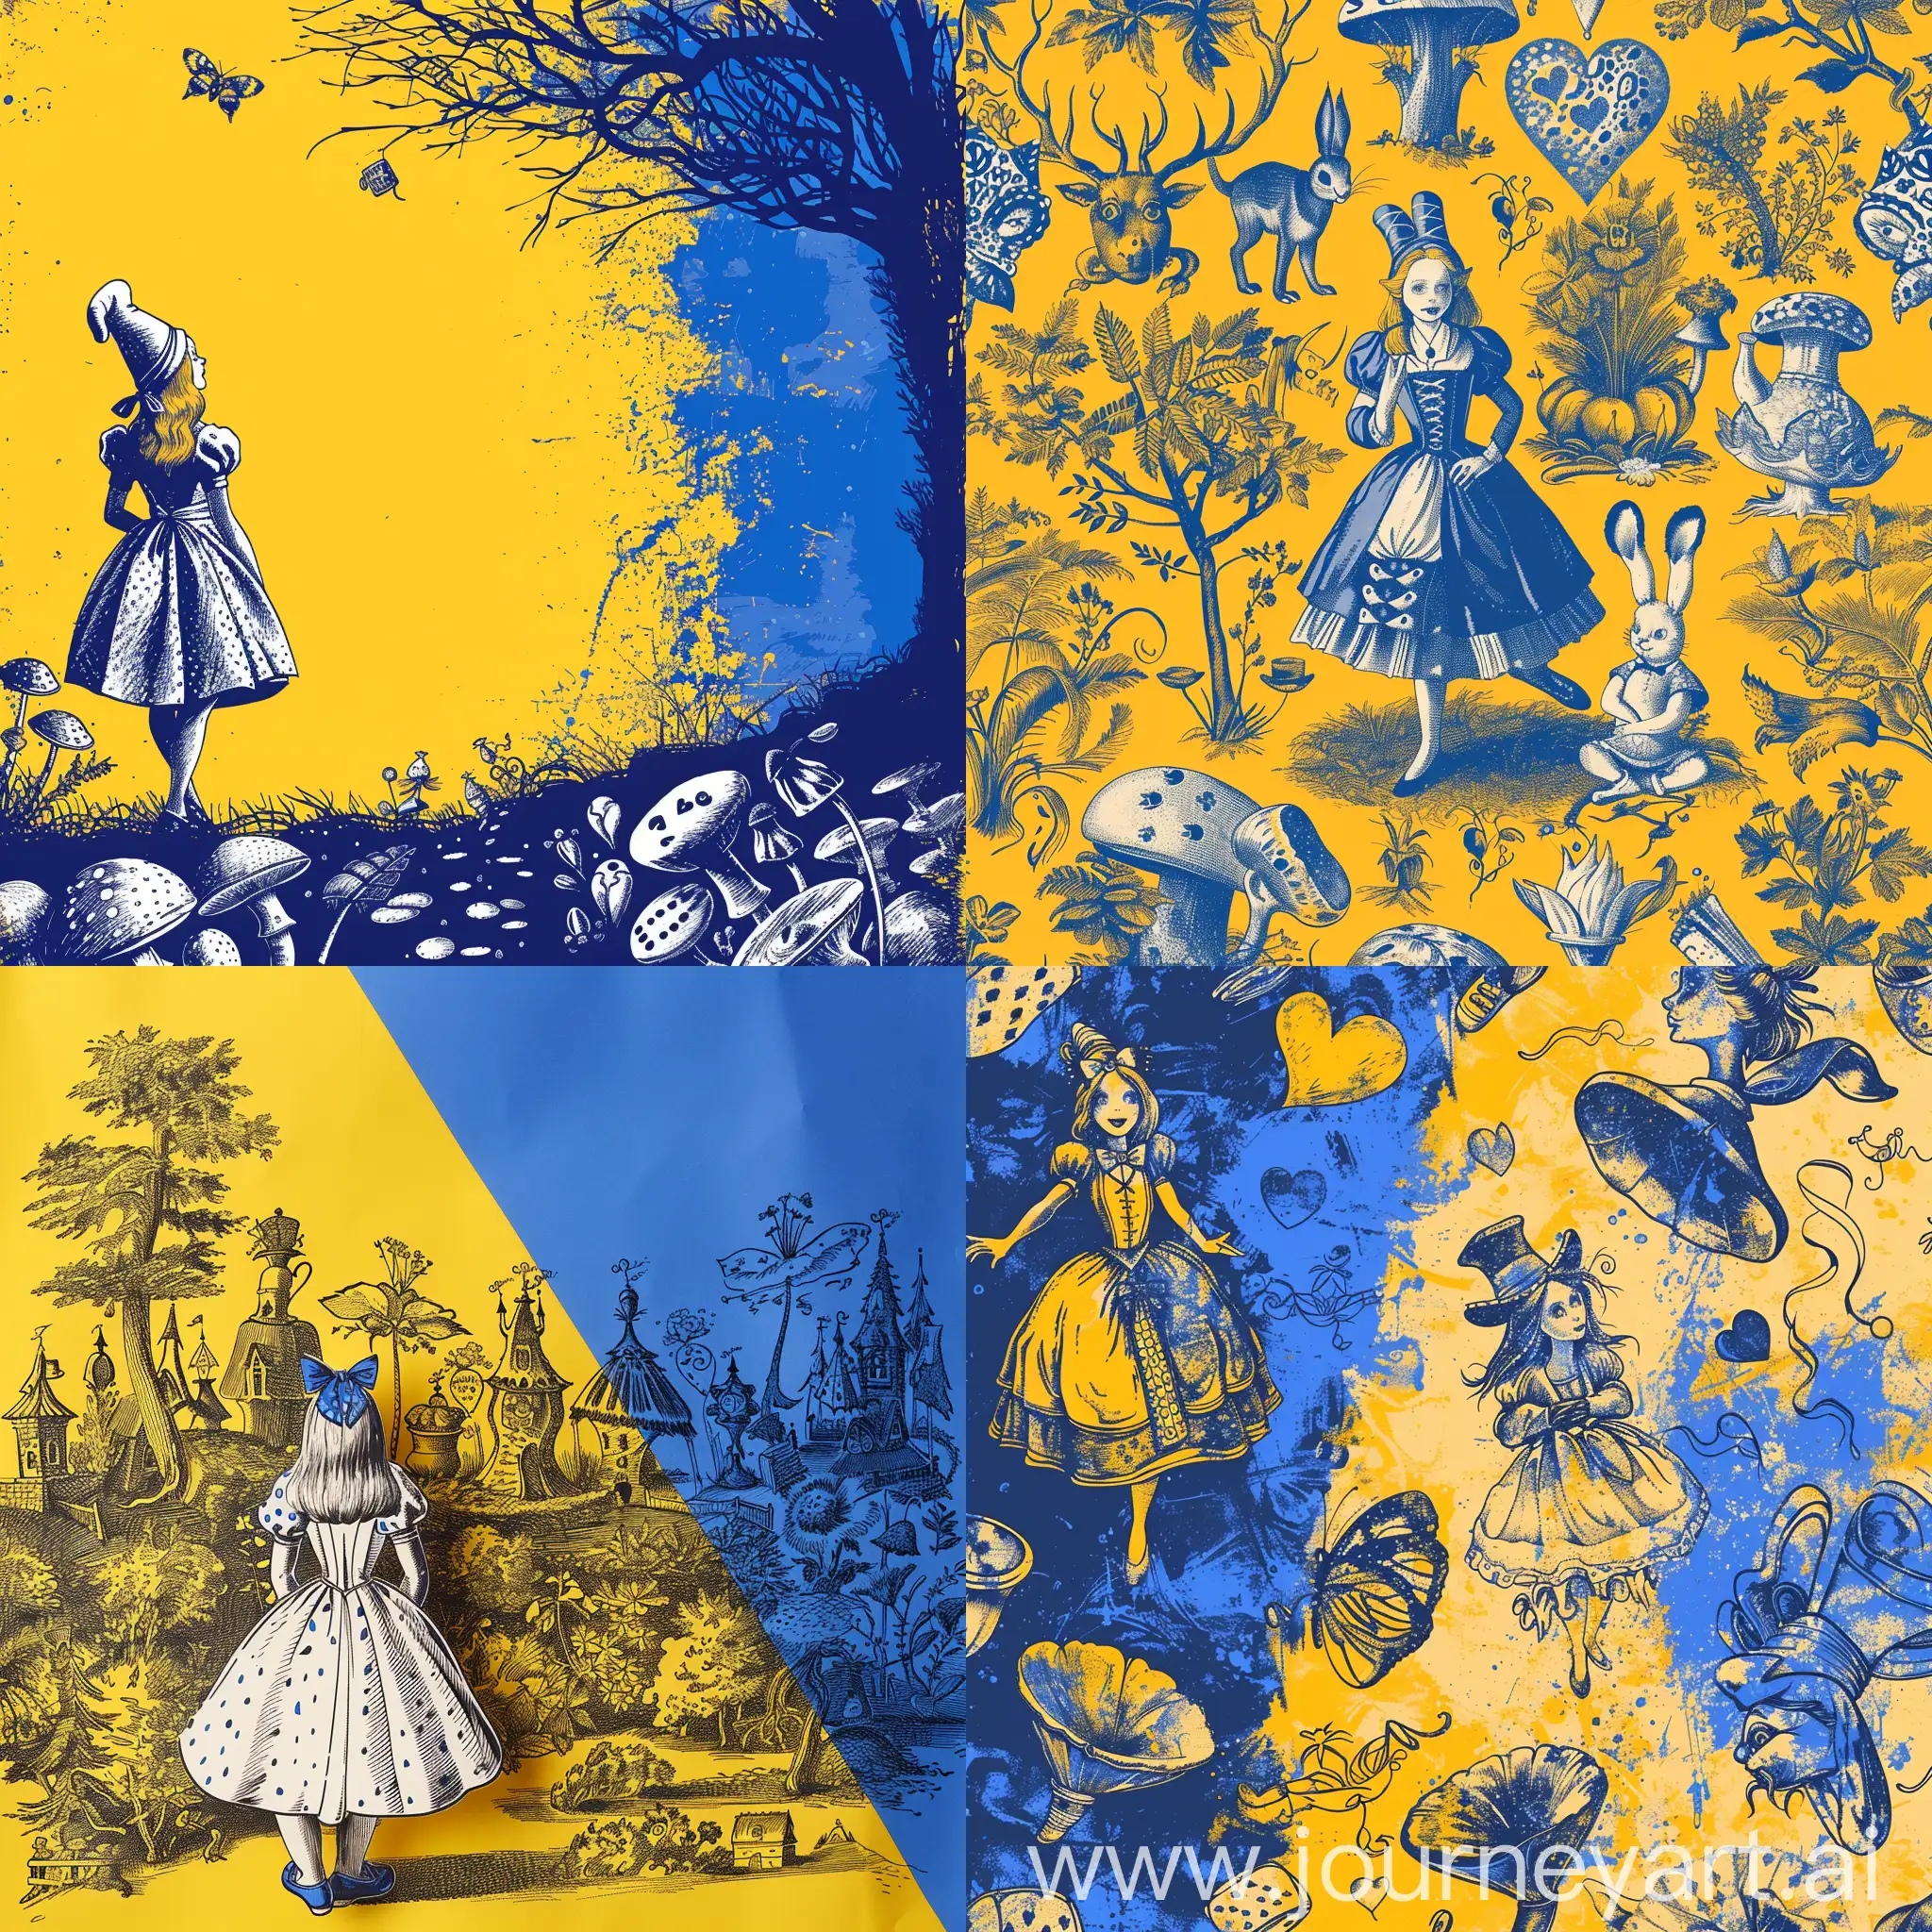 fond de couleur jaune et bleu avec des dessins liés à Alice au pays des merveilles